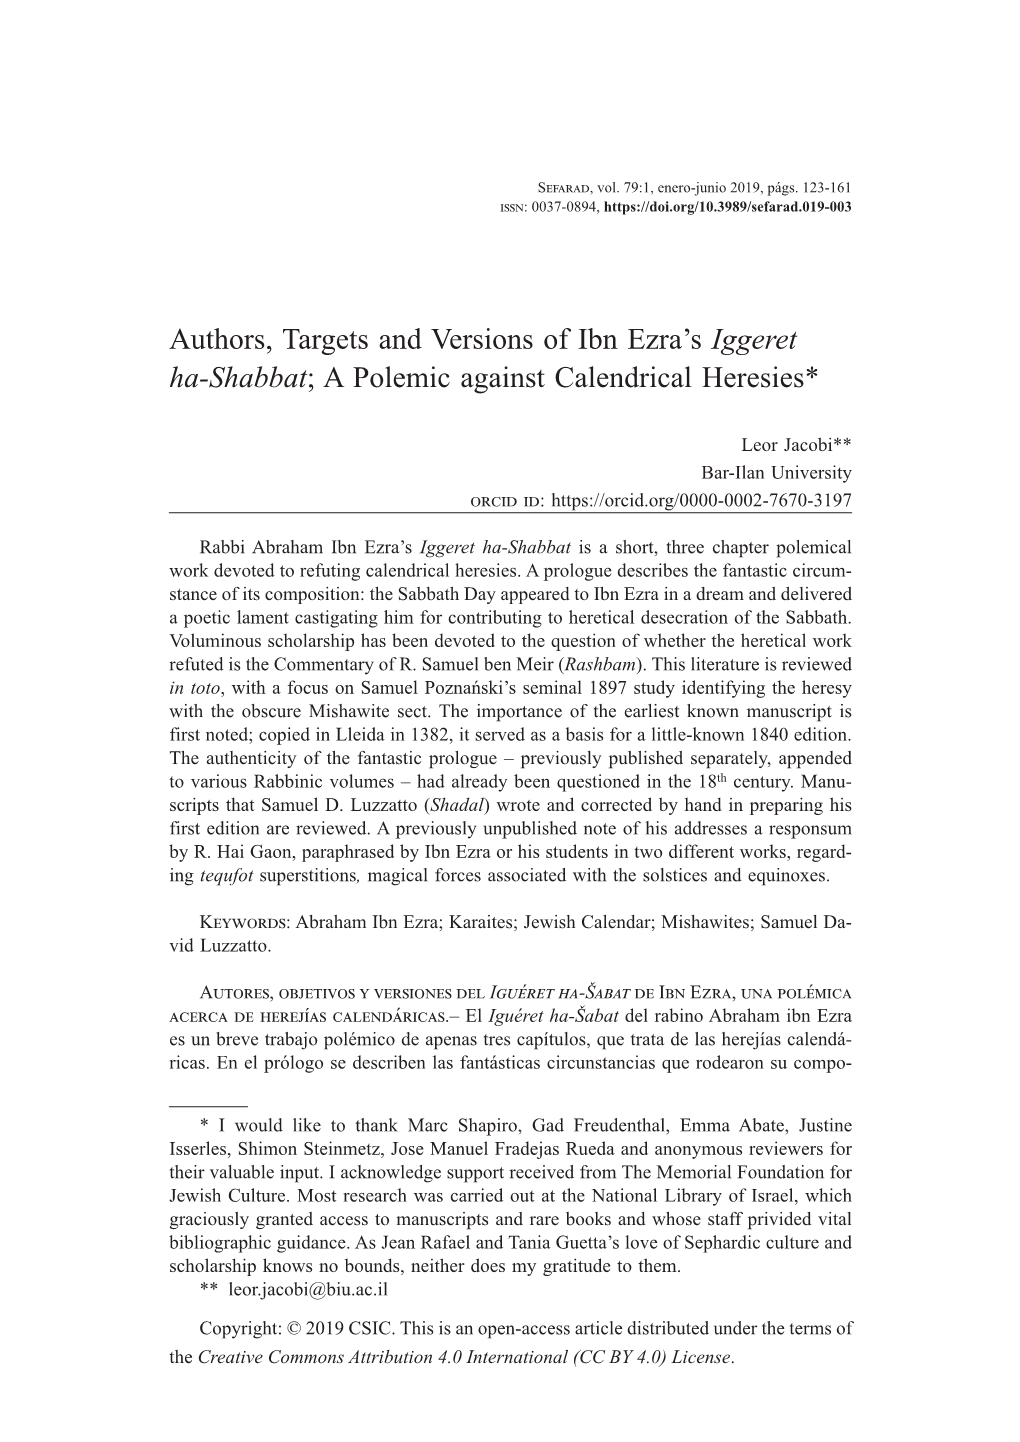 Authors, Targets and Versions of Ibn Ezra's Iggeret Ha-Shabbat